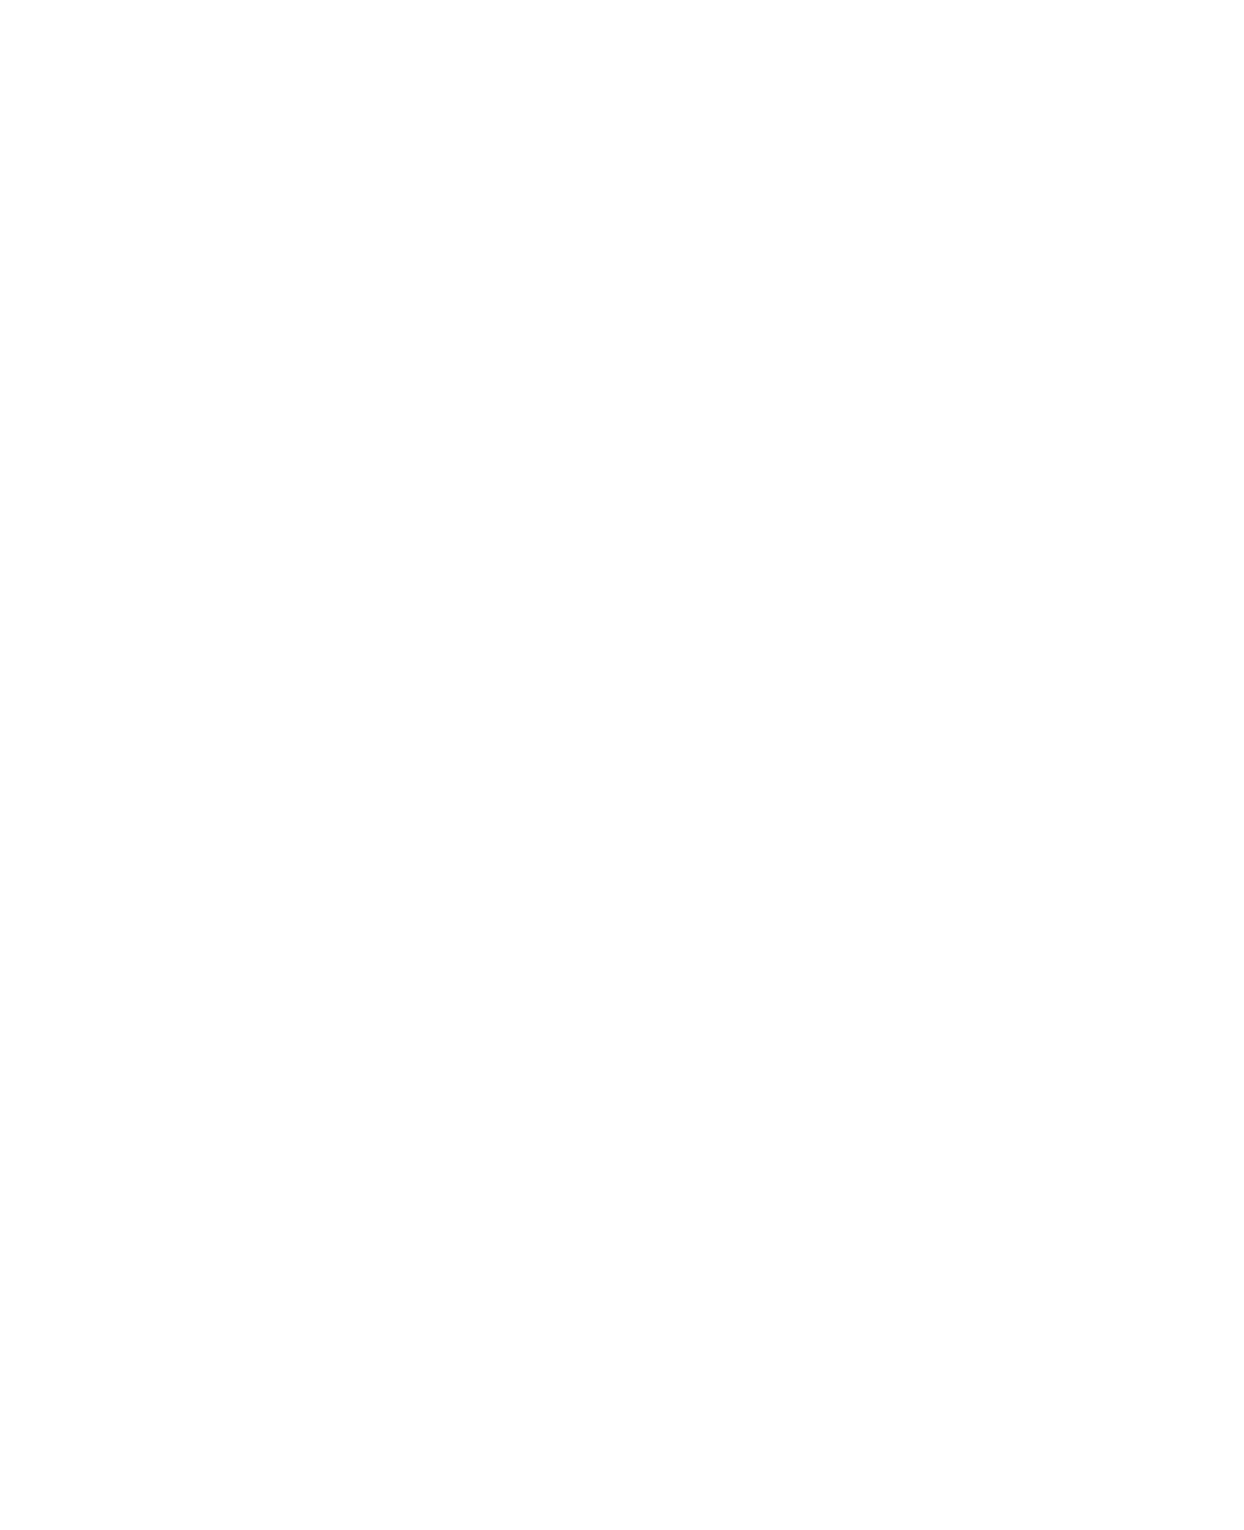 SACH | Solo Artistas Chilenos